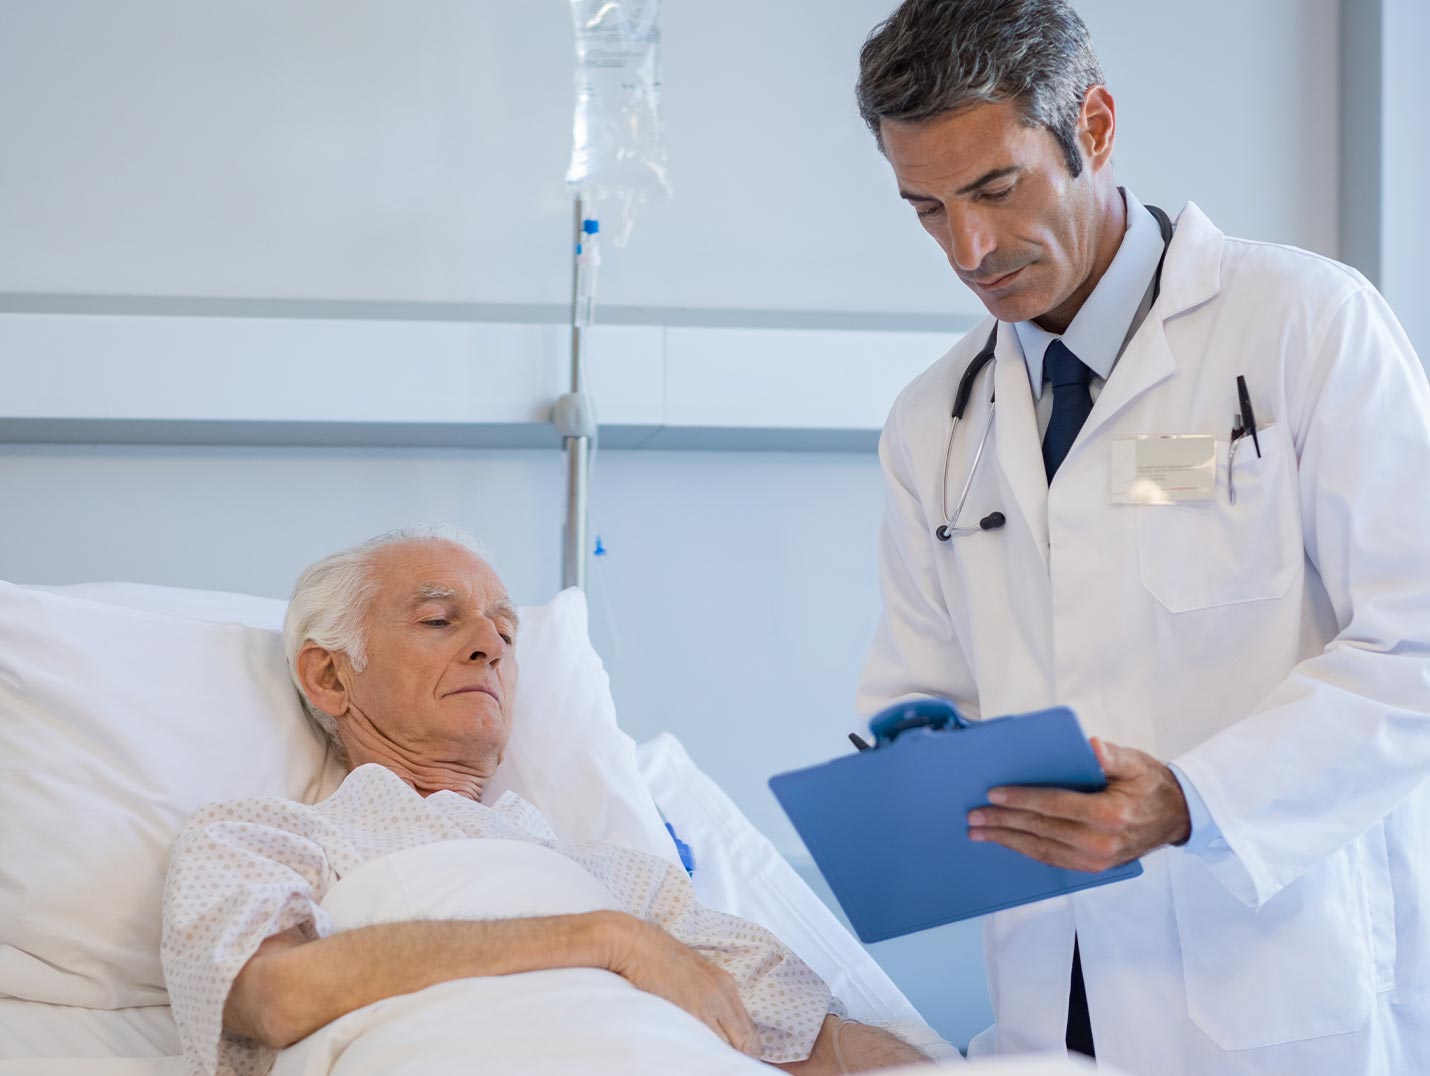 Doctor con bata blanca dando un diagnóstico a una persona de la tercera edad que se encuentra internado en el hospital